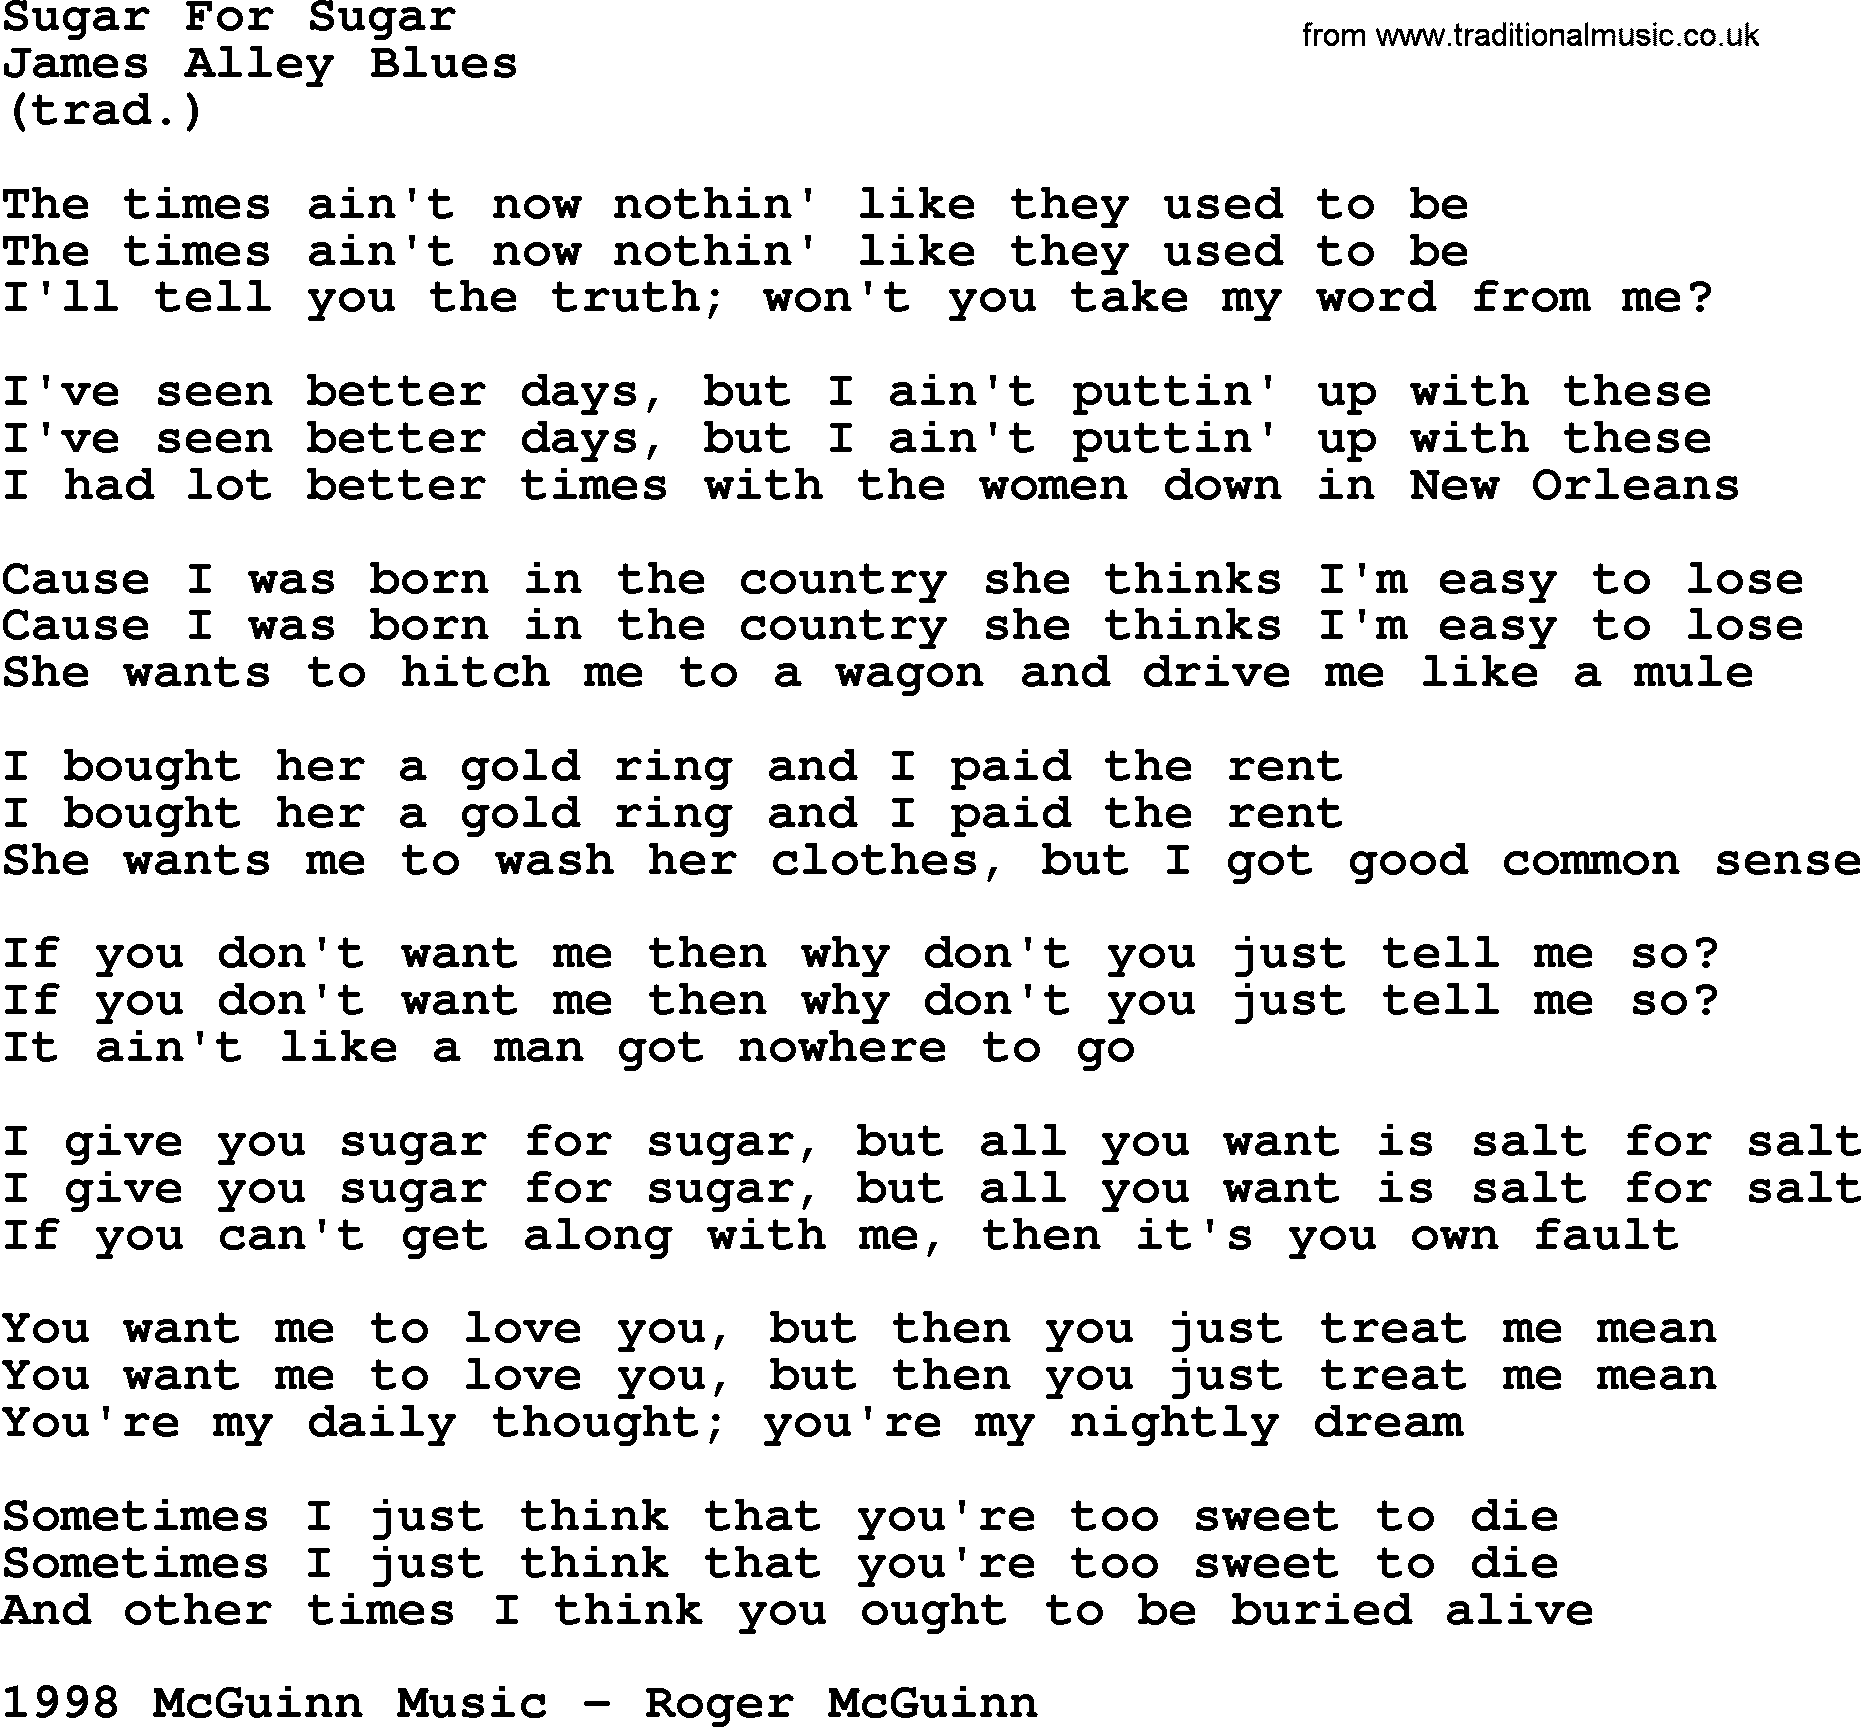 The Byrds song Sugar For Sugar, lyrics